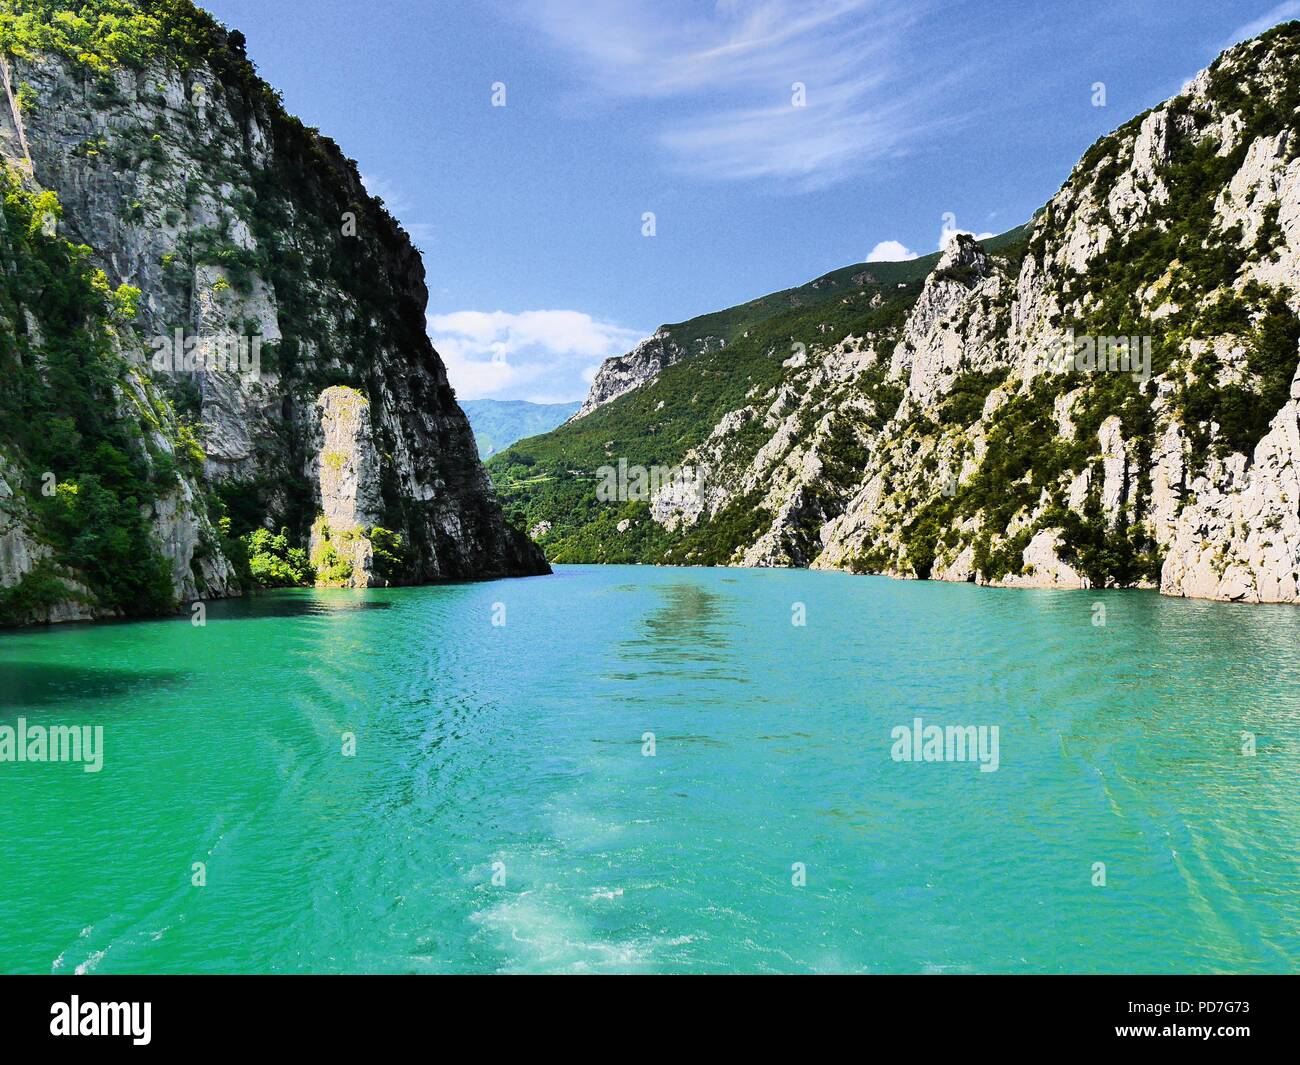 Contrasto elevato vista da sogno di calme acque turchesi del lago artificiale Komani e ripidi fianchi della valle, Albania, invitando esplorazione e avventura Foto Stock